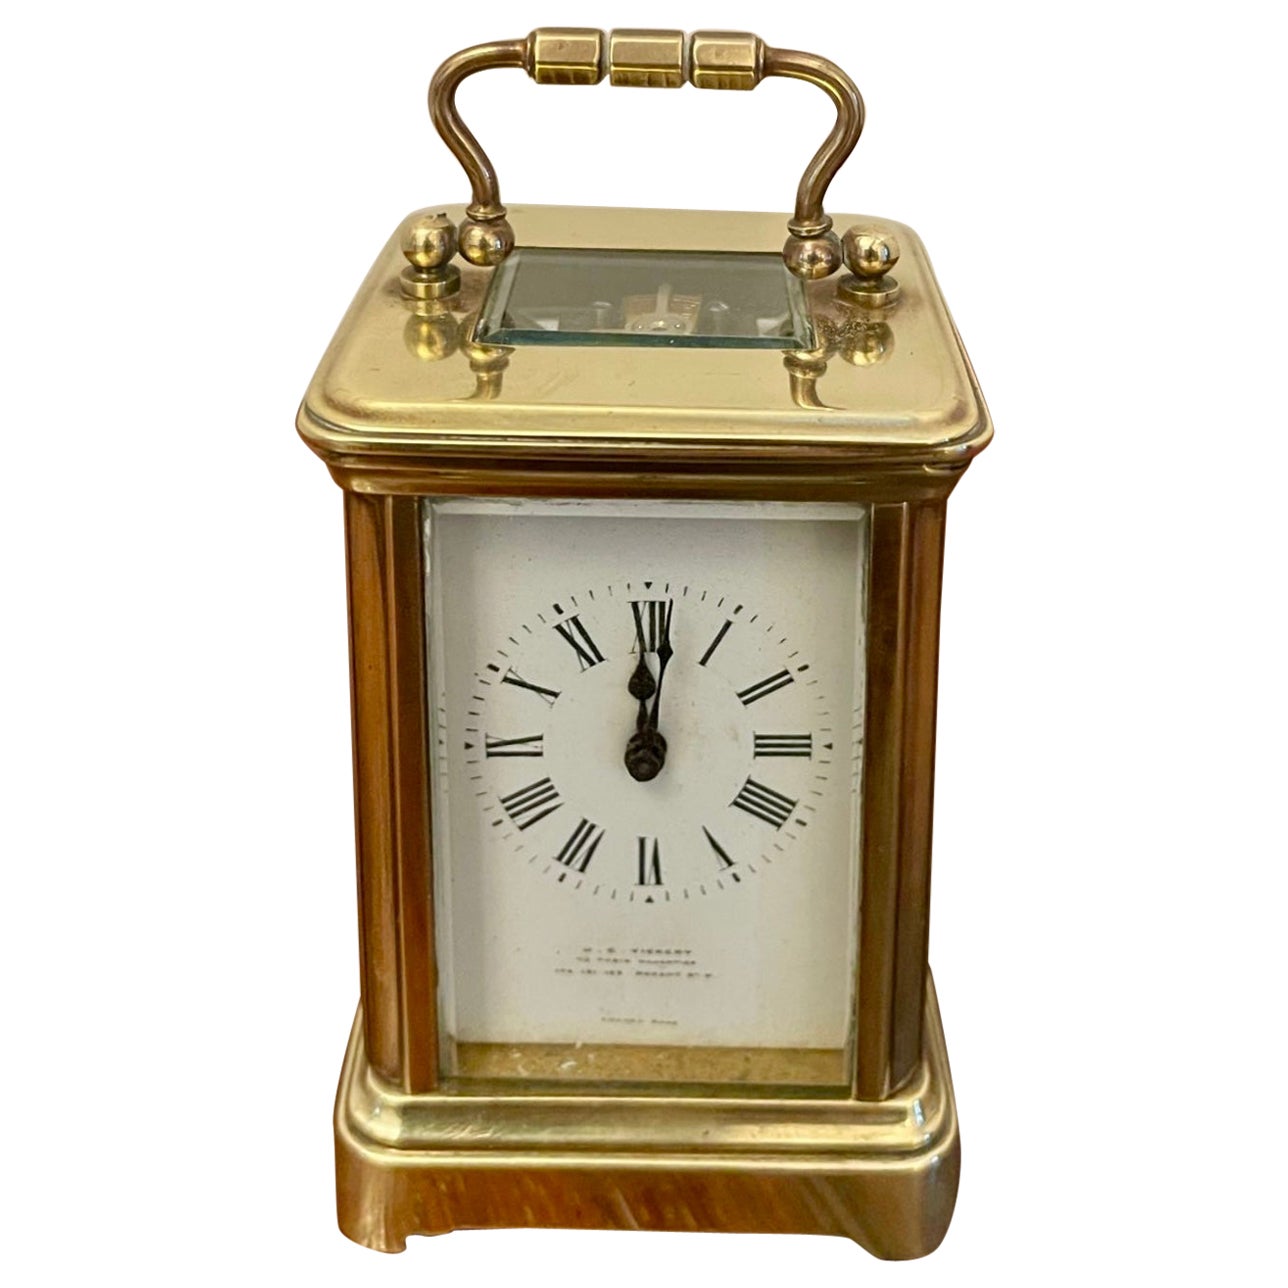 Antique Edwardian Quality Miniature Brass Carriage Clock By J C Vickery, London (Horloge miniature en laiton de qualité édouardienne de J.C. Vickery, London)